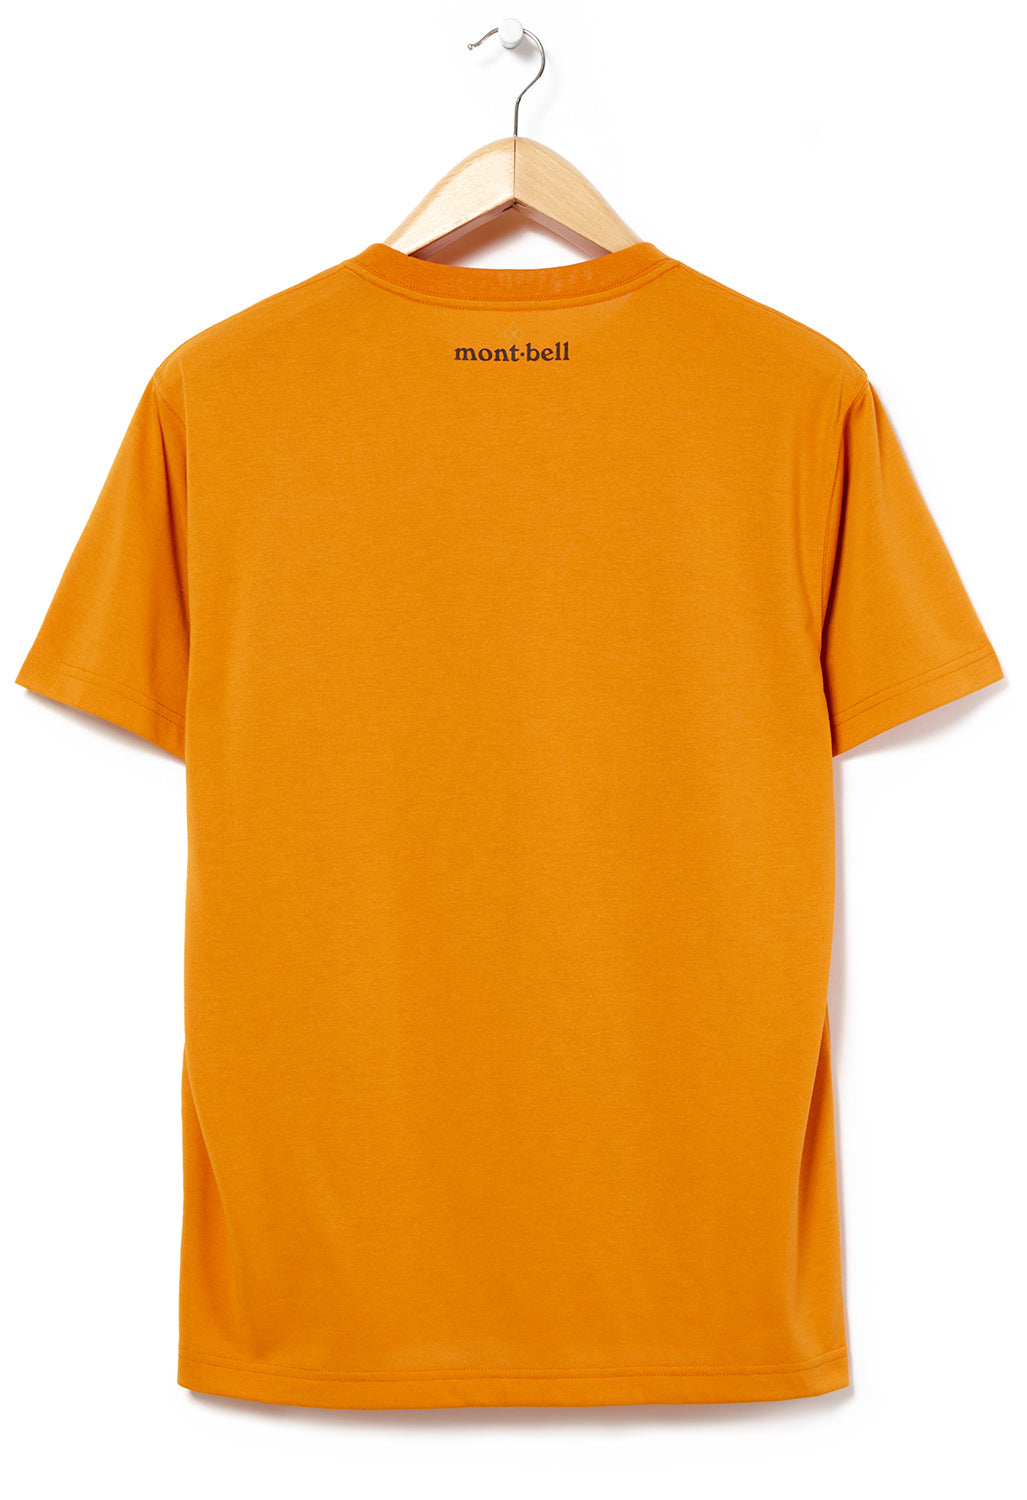 Montbell Wickron Rope T-Shirt - Dark Orange